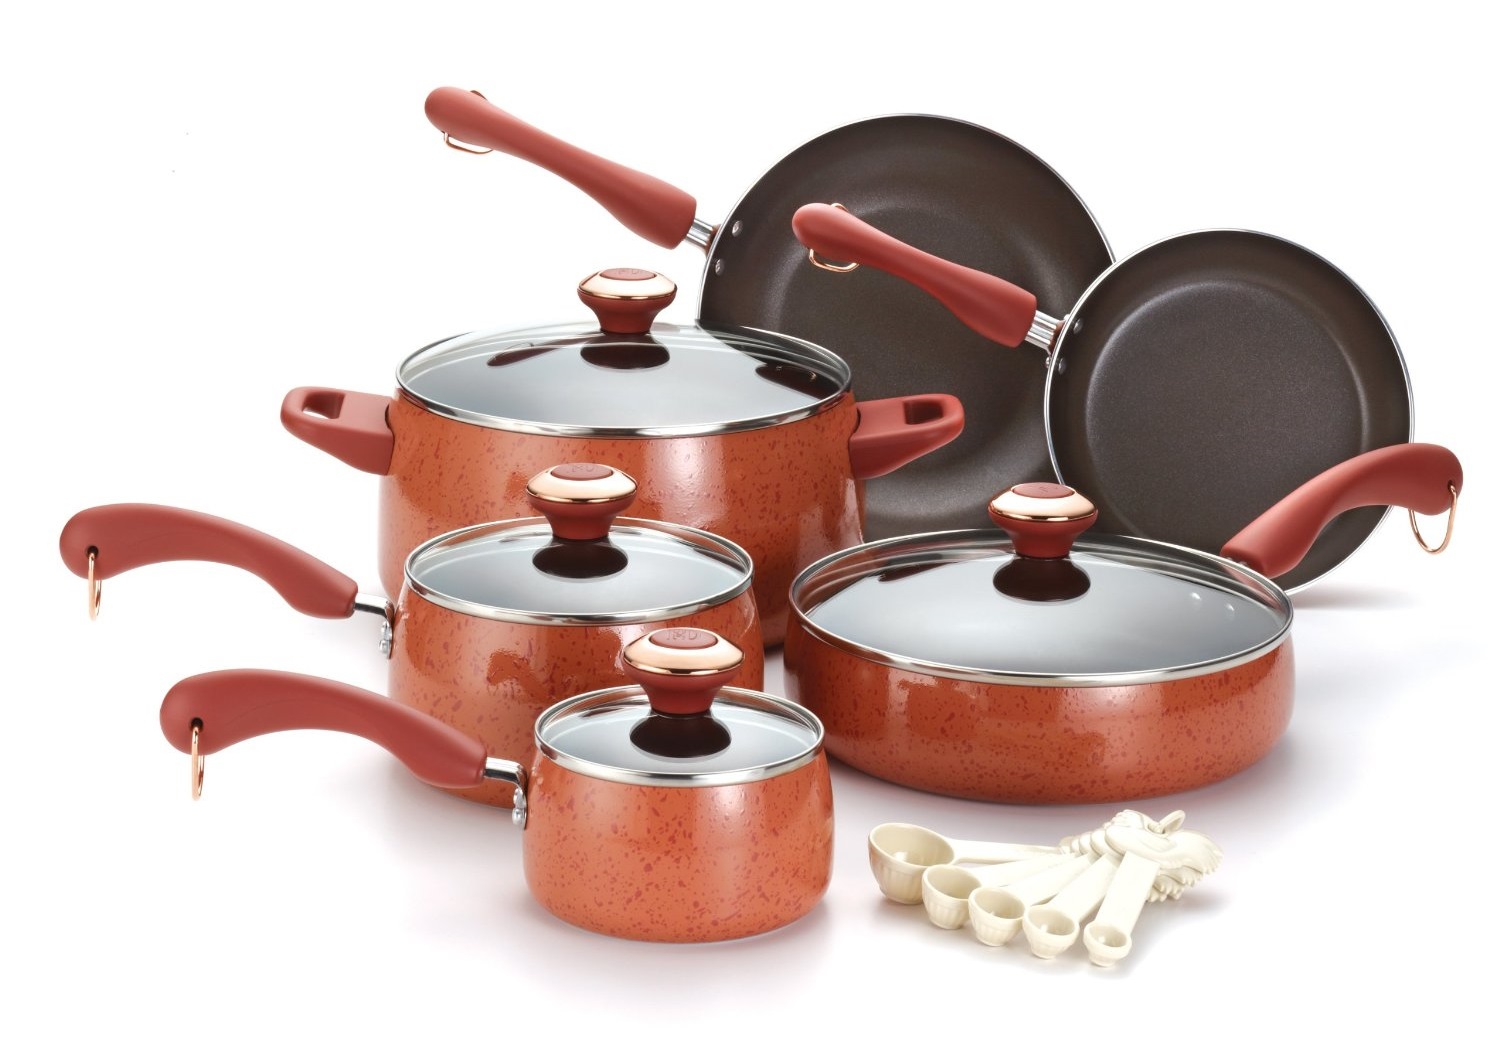 Paula Deen Nonstick Red Speckled Cookware Pots Pans Set 4 Piece Signature